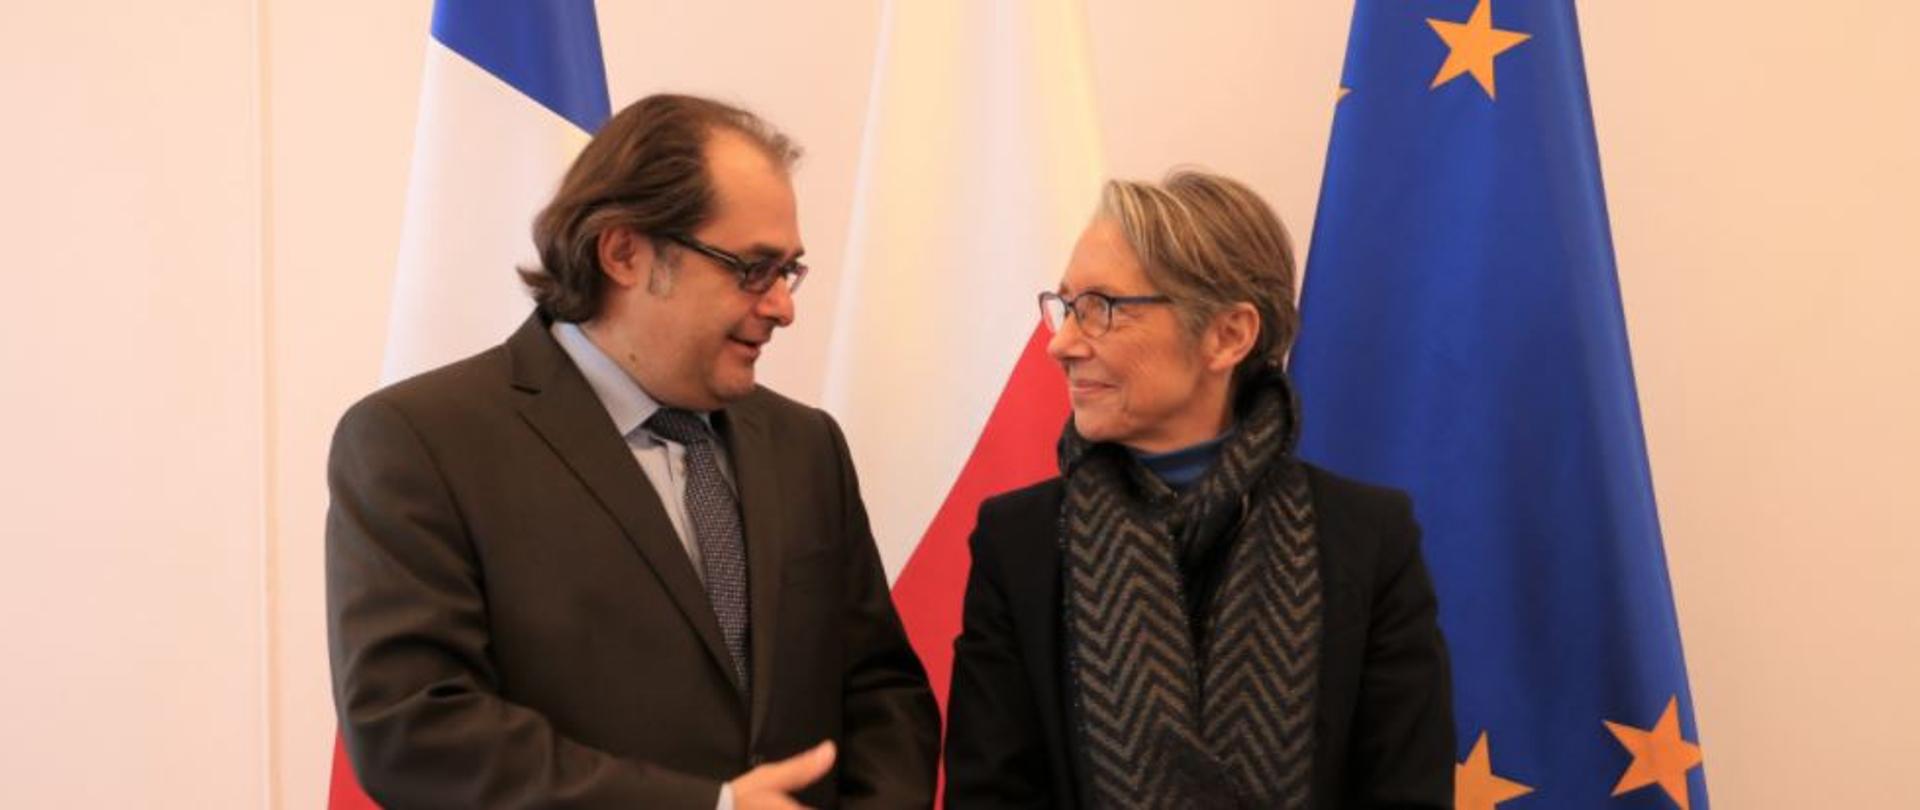 Na zdjęciu od lewej strony znajduje się minister Marek Gróbarczyk oraz minister Élisabeth Borne. Ministrowie rozmawiają na tle trzech flag: Francji, Polski i Unii Europejskiej.